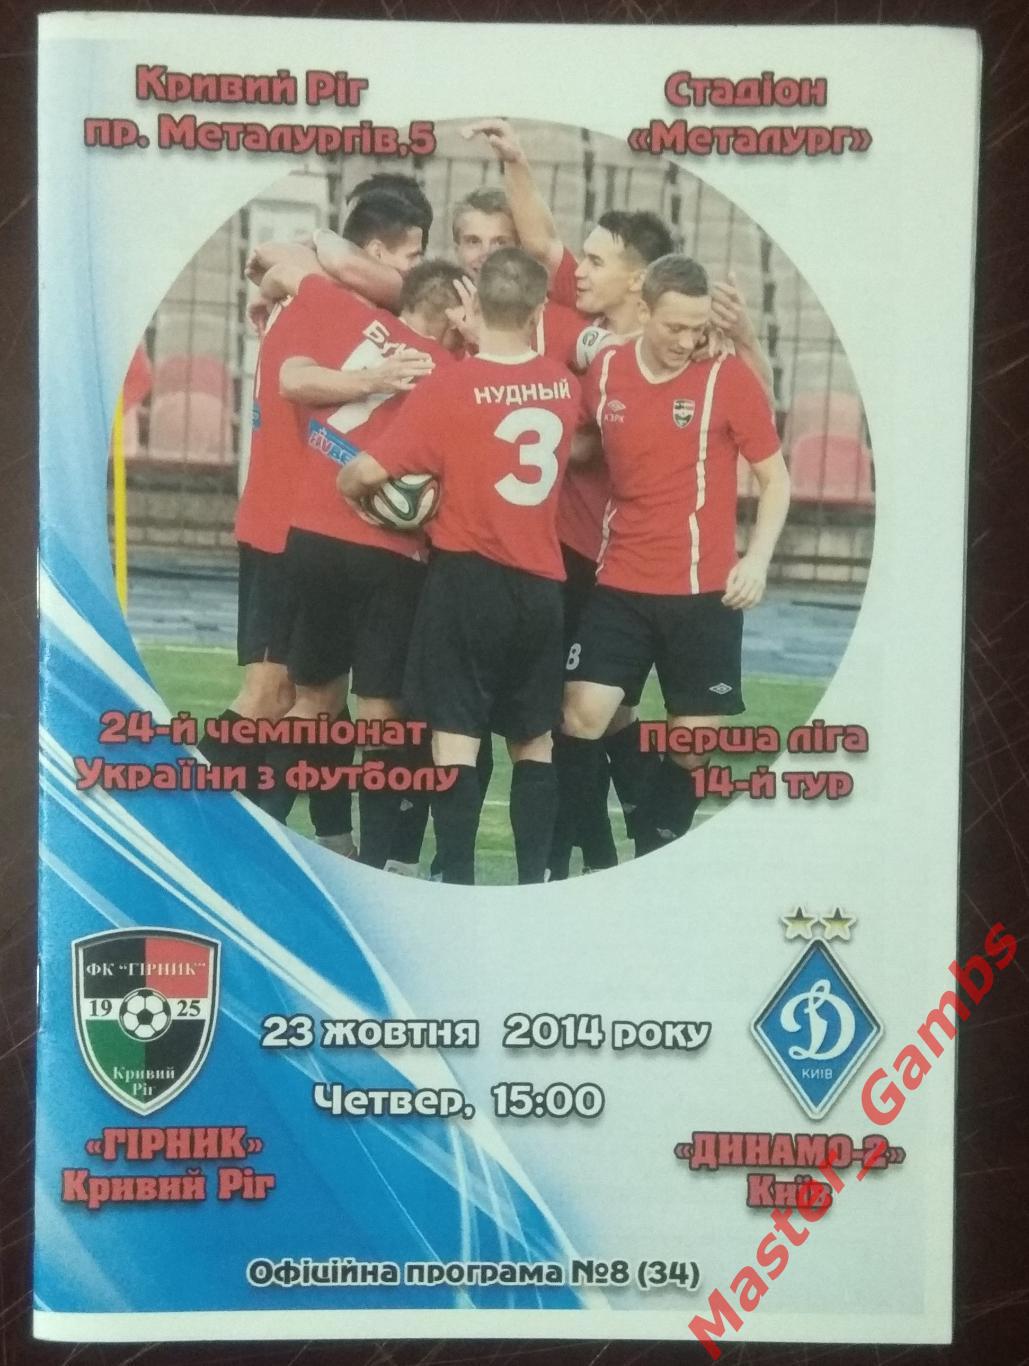 Горняк Кривой Рог - Динамо - 2 Киев 2014/2015*